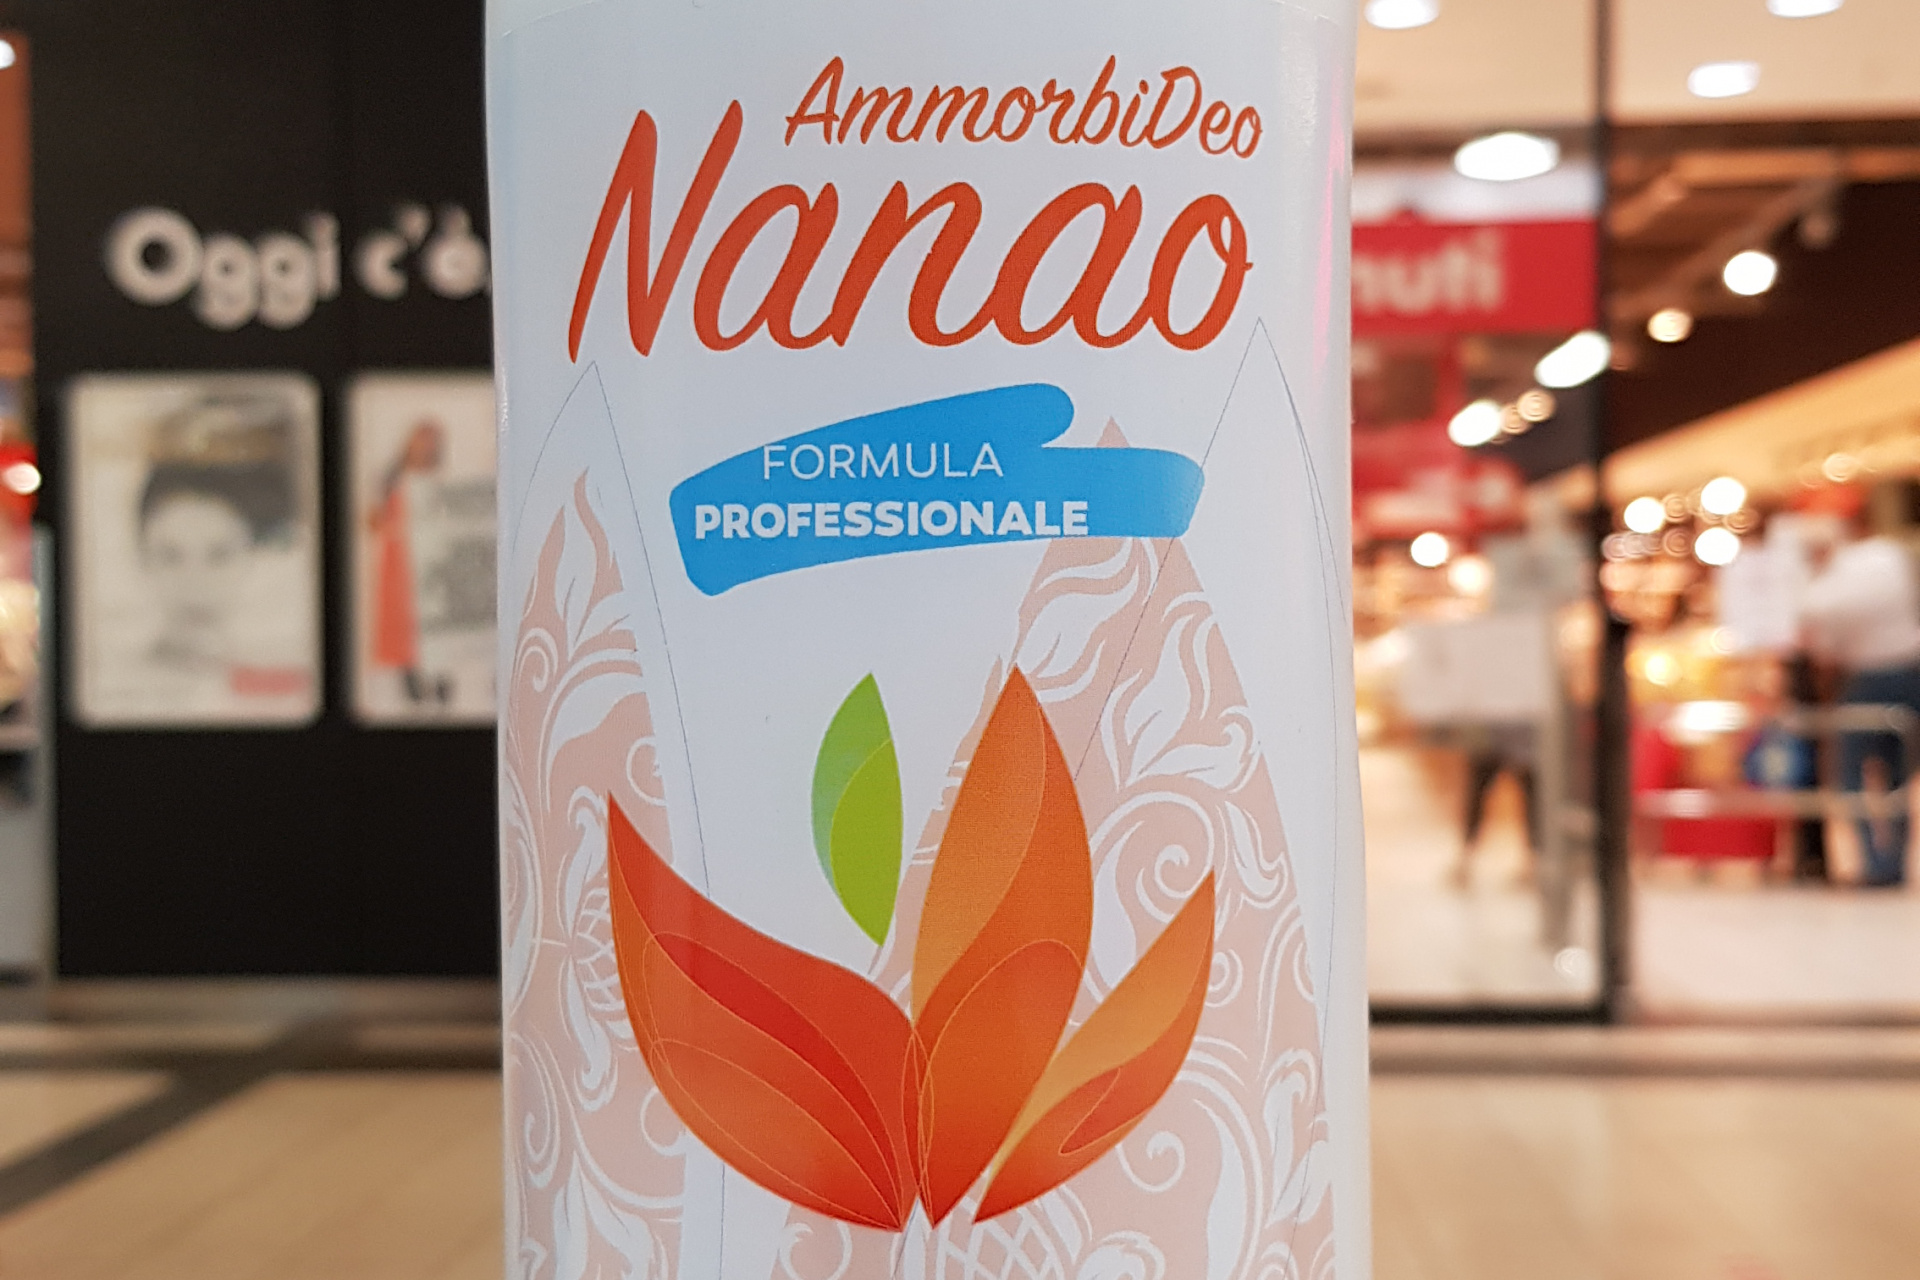 Nanao AmmorbiDeo